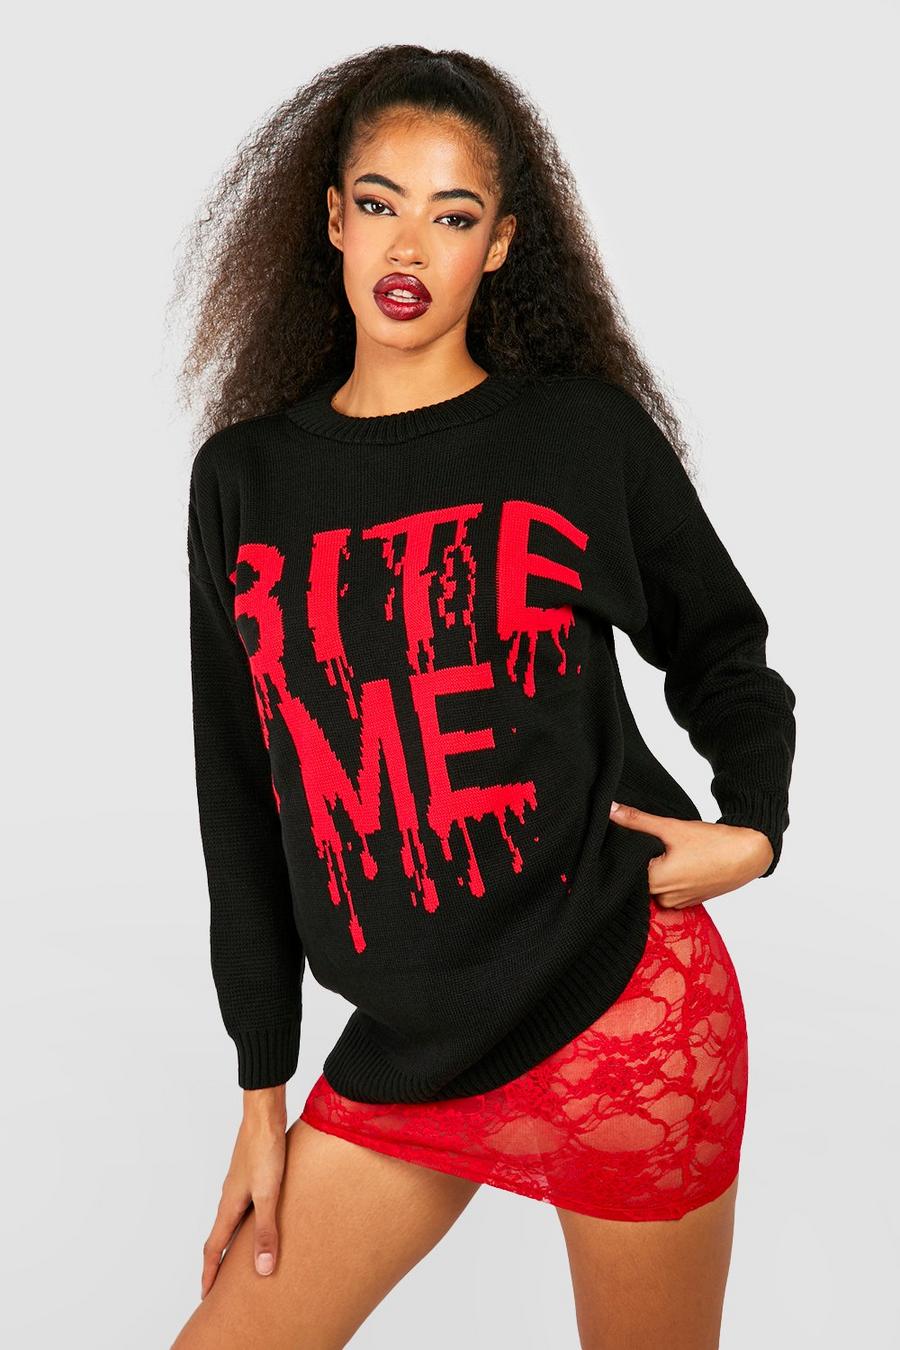 Maglione di Halloween con slogan Bite Me